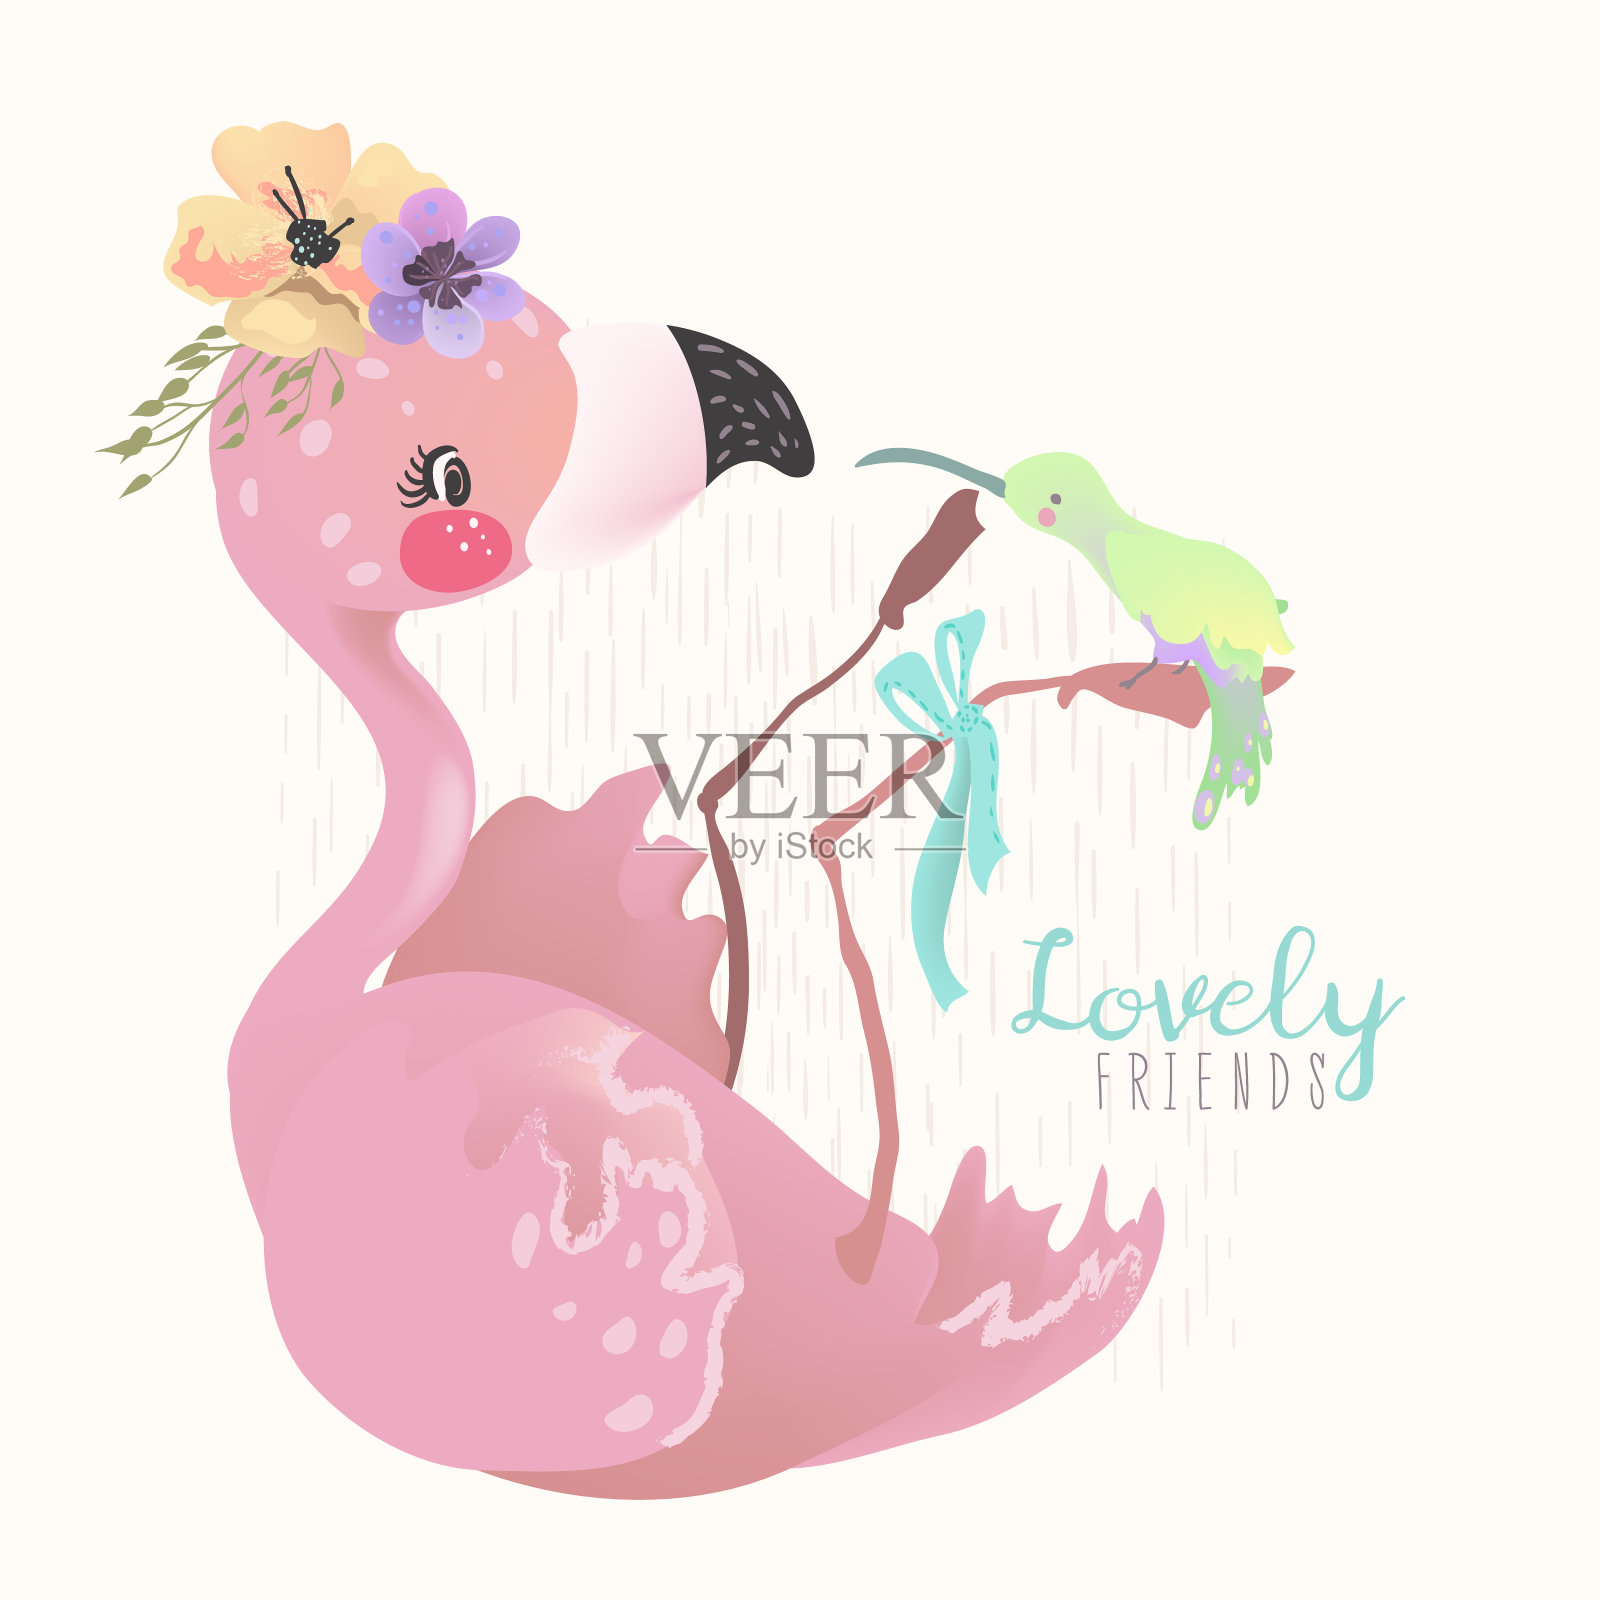 可爱的梦想火烈鸟粉红色的婴儿公主异国情调的鸟与热带花朵插画图片素材